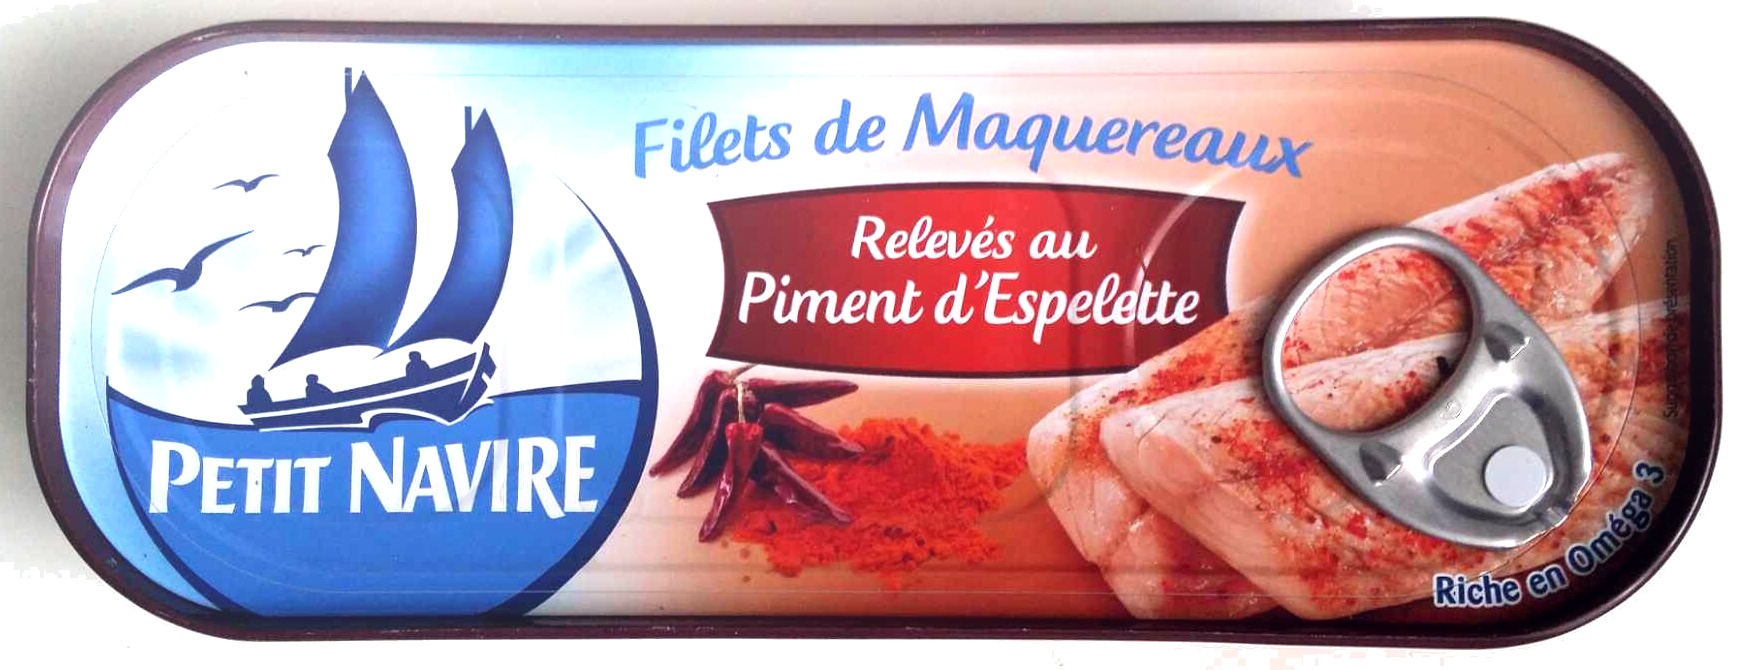 Filets de maquereaux relevés au piment d'Espelette - Produkt - fr